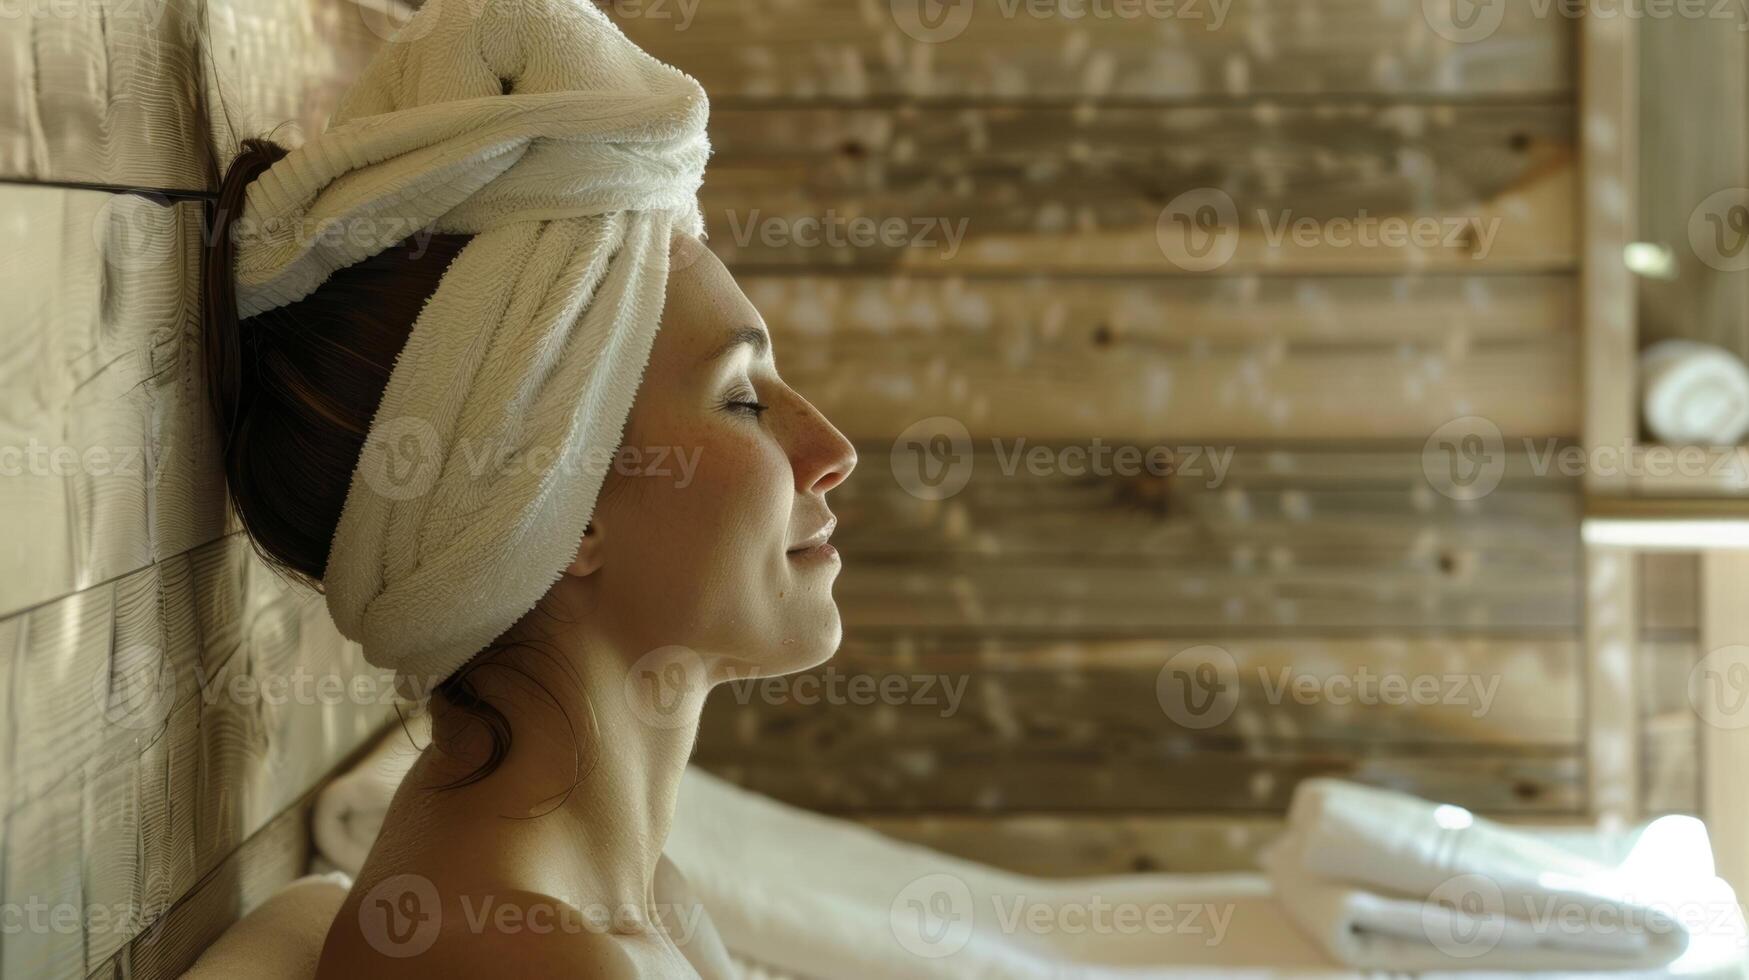 de warmte van de sauna en de verfrissend gevoel van een gelaats creëren de perfect balans van warmte en koelte. foto